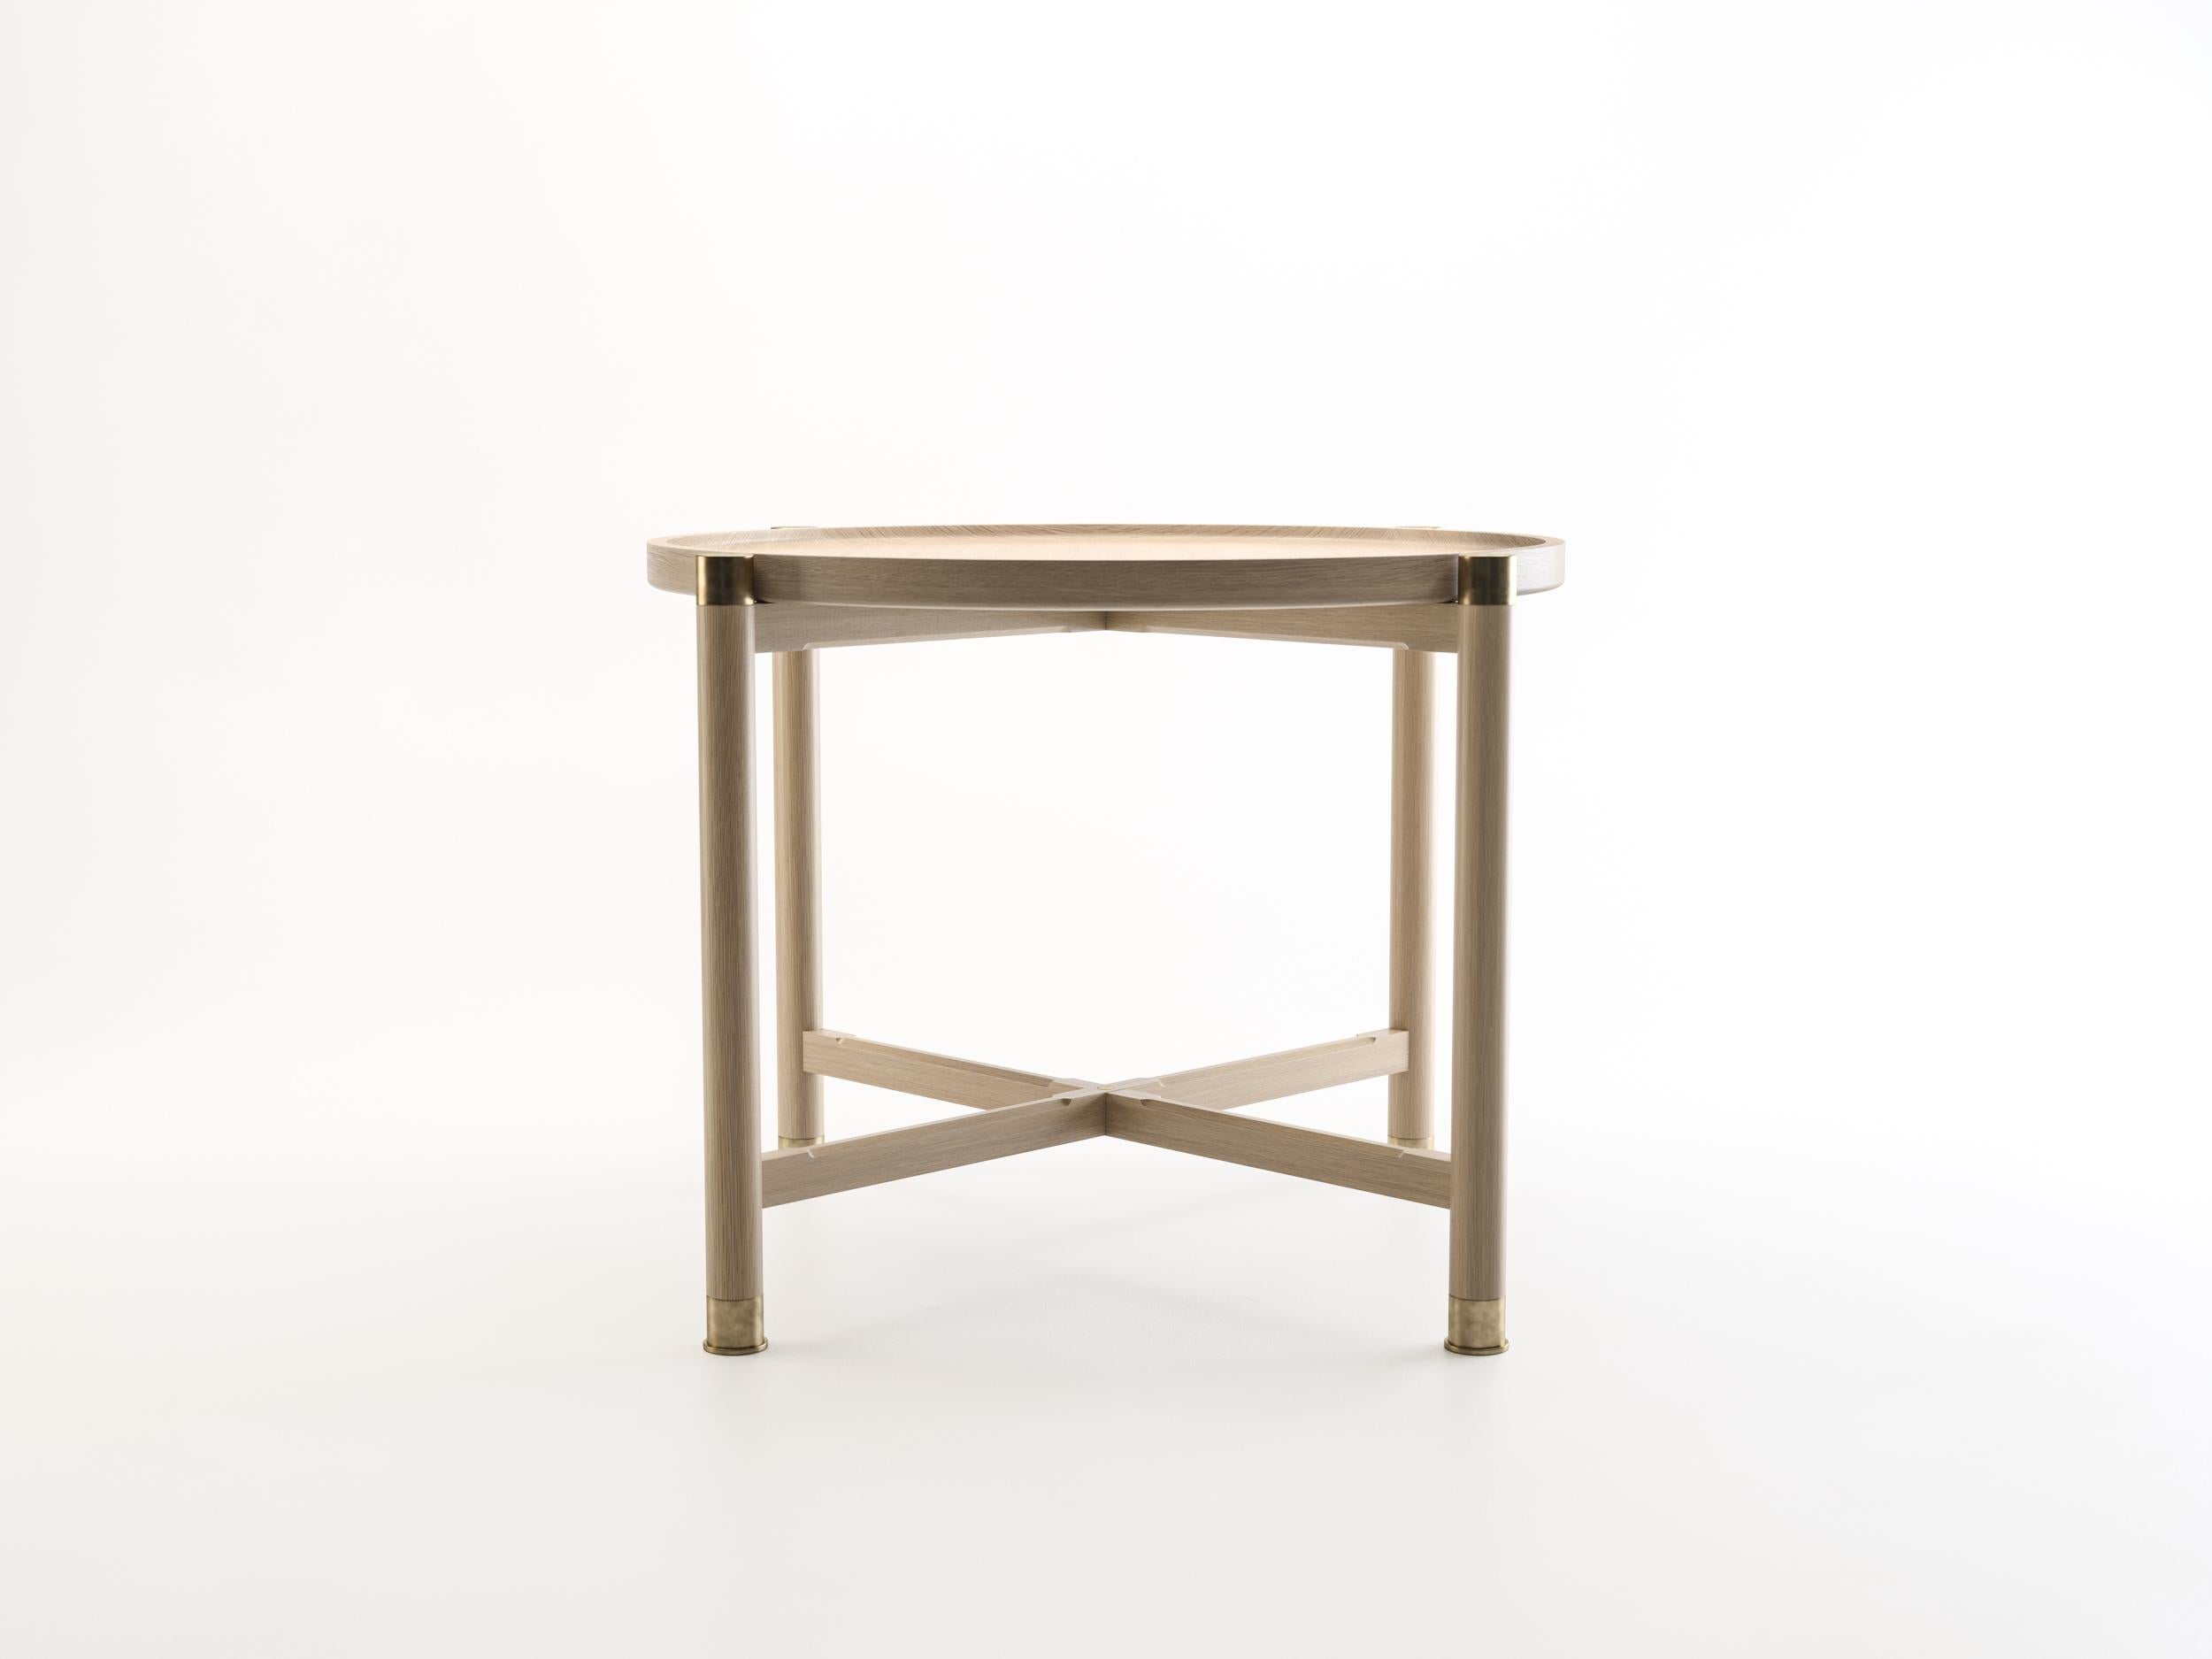 La table d'appoint Otto est une table aux proportions généreuses et à la forme simple et bien articulée.
Disponible en chêne ou en noyer, il est doté d'un plateau de coupe rond, d'importantes ferrures en laiton antique et d'élégantes traverses